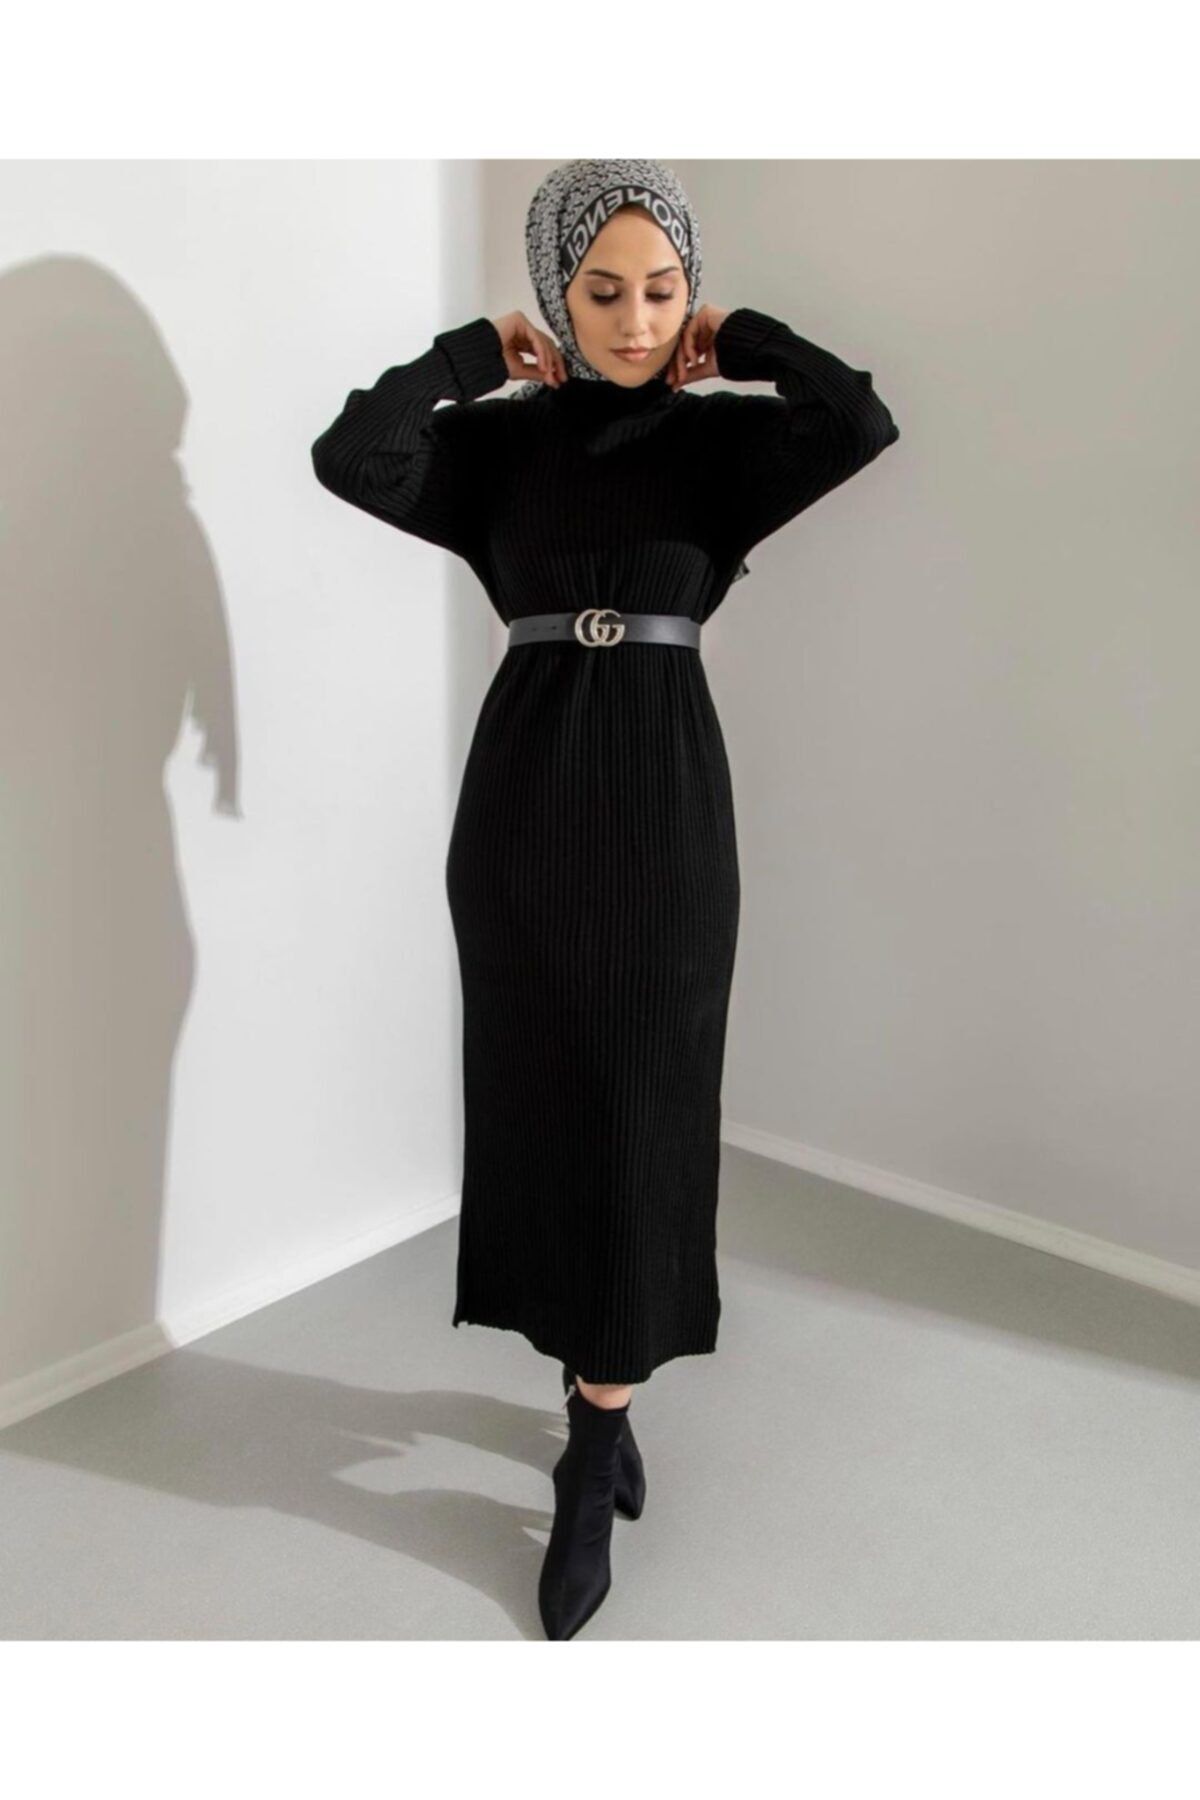 asmira boutique Kadın Boğazlı Triko Elbise